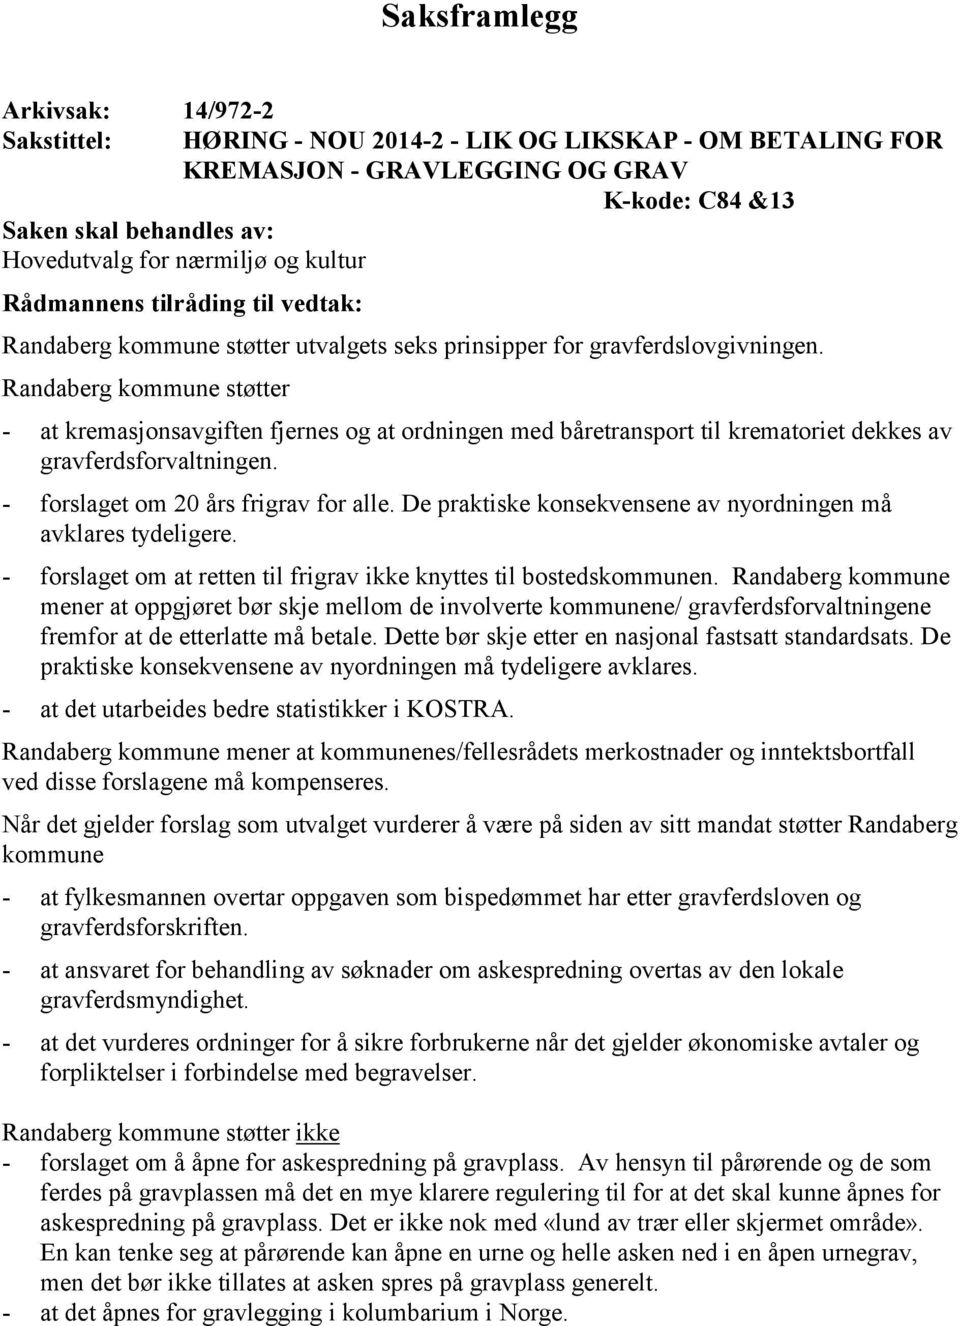 Randaberg kommune støtter - at kremasjonsavgiften fjernes og at ordningen med båretransport til krematoriet dekkes av gravferdsforvaltningen. - forslaget om 20 års frigrav for alle.